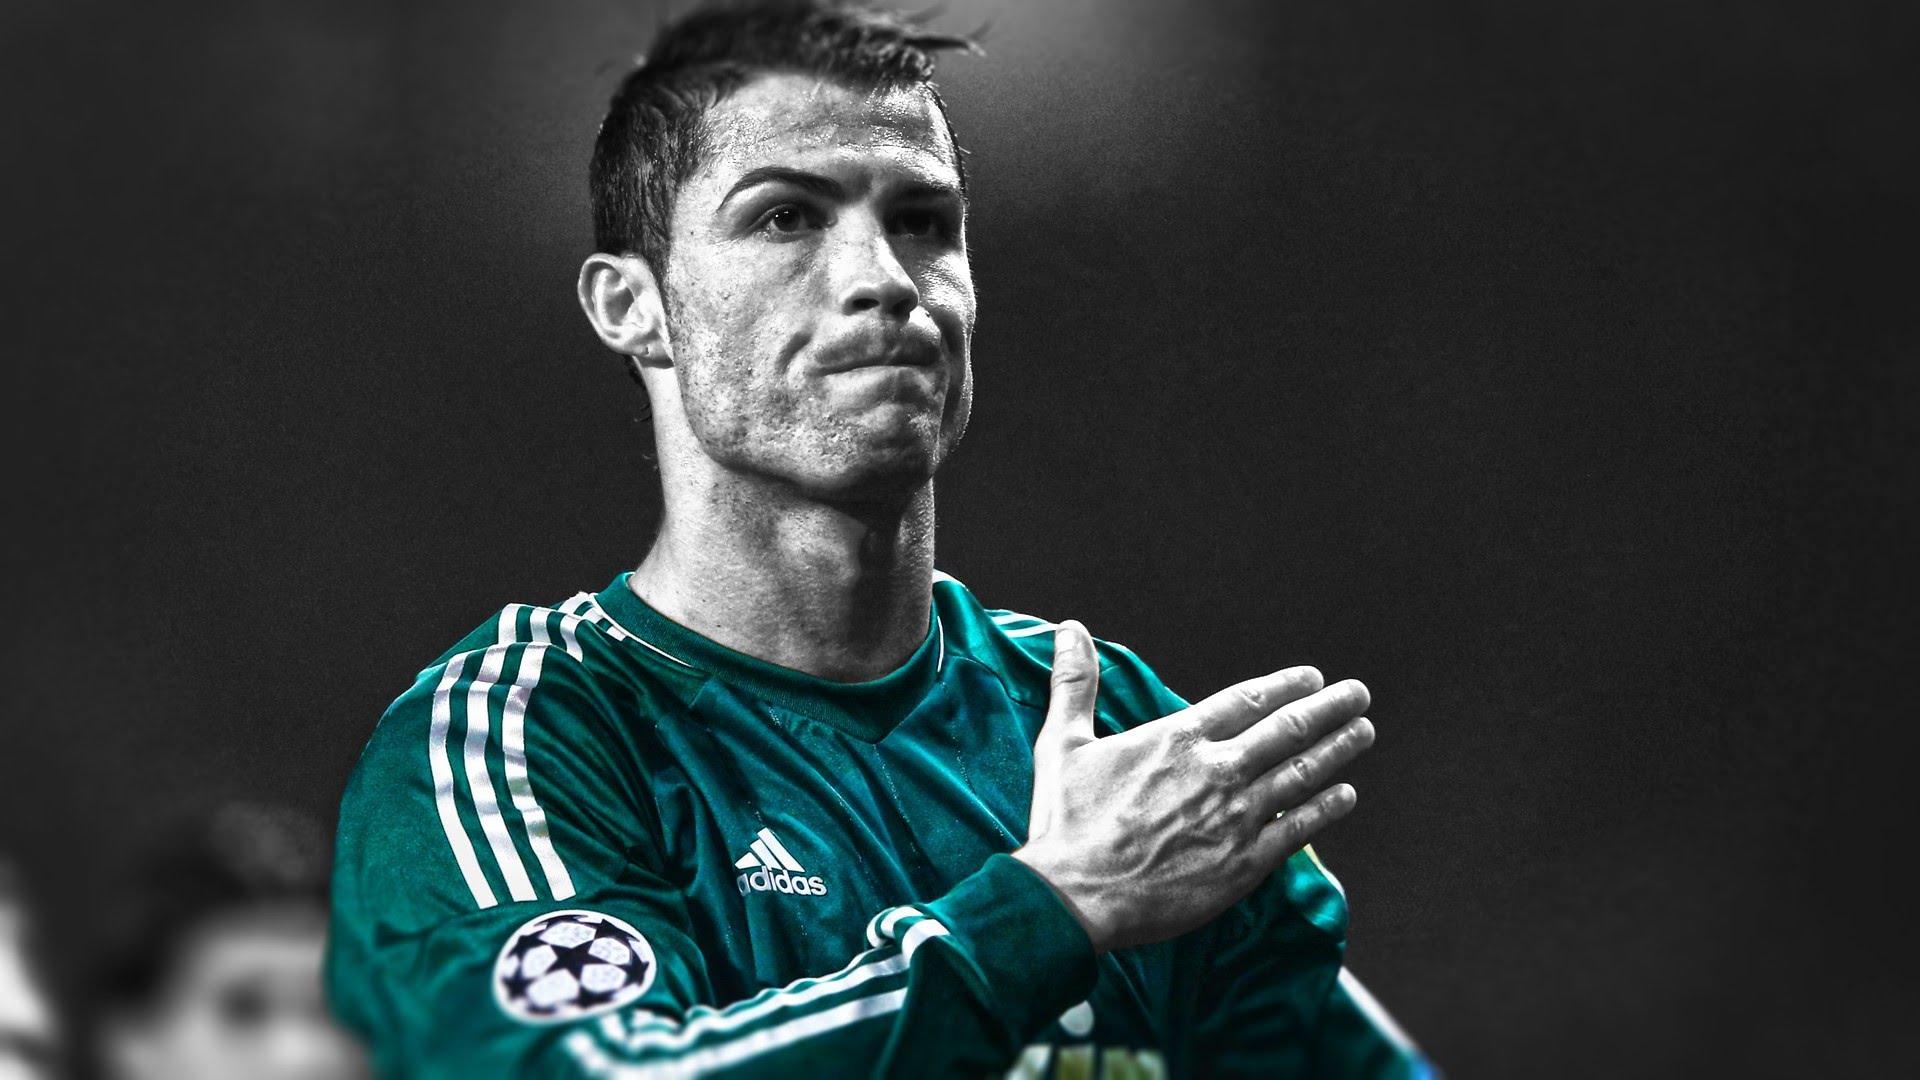 Cristiano Ronaldo HD Wallpaper for desktop download